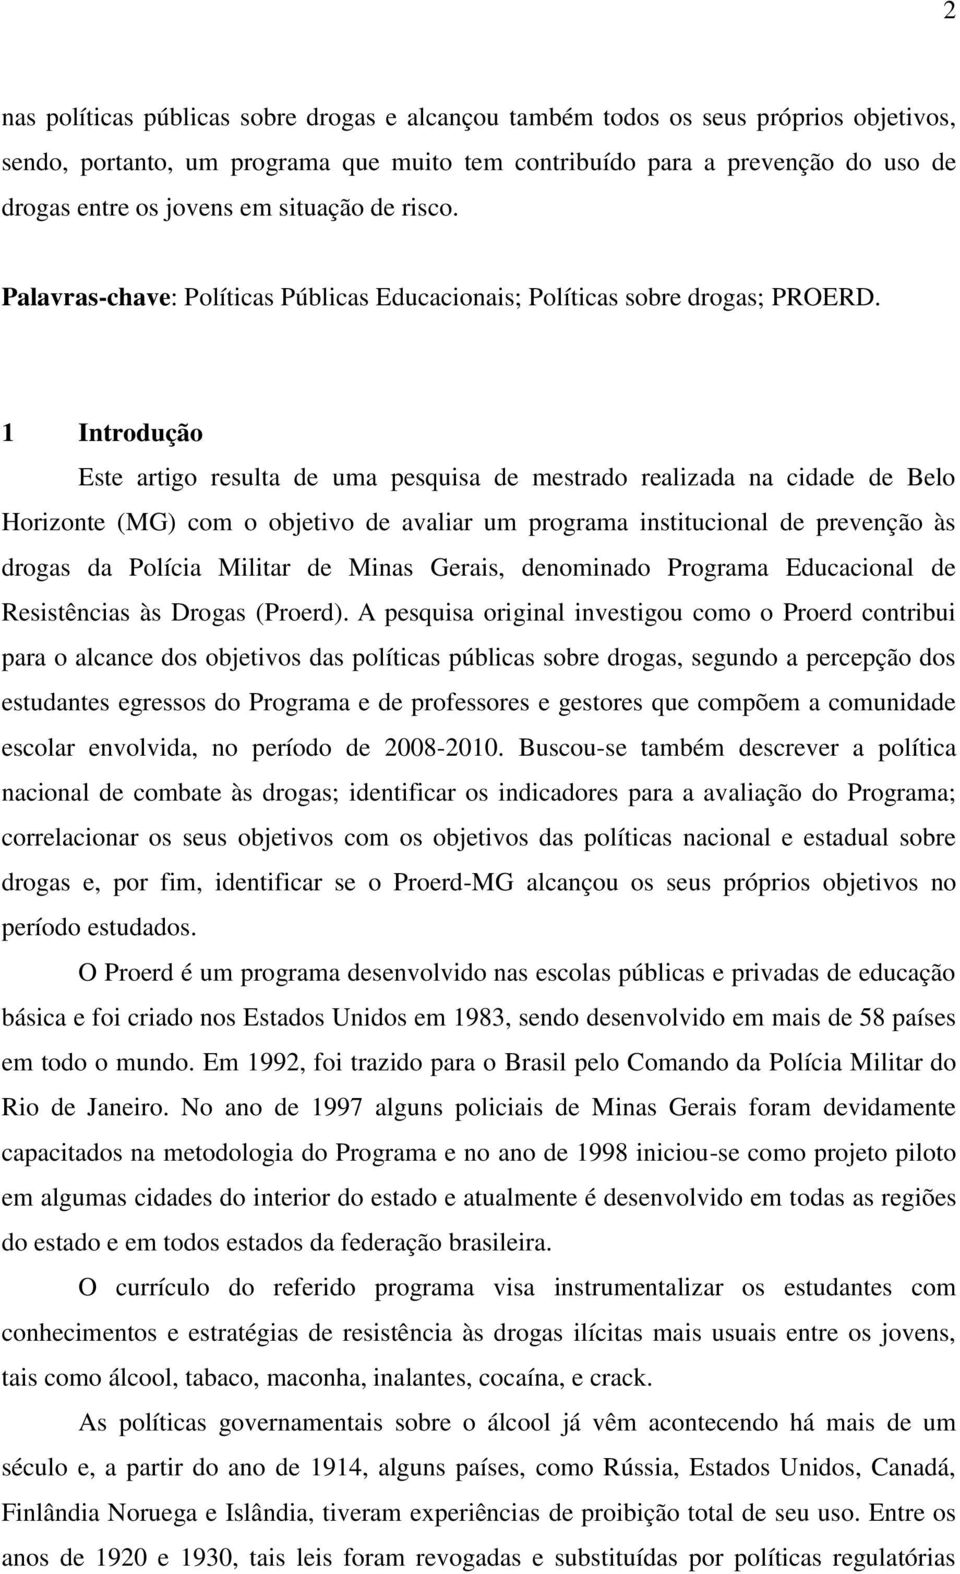 1 Introdução Este artigo resulta de uma pesquisa de mestrado realizada na cidade de Belo Horizonte (MG) com o objetivo de avaliar um programa institucional de prevenção às drogas da Polícia Militar